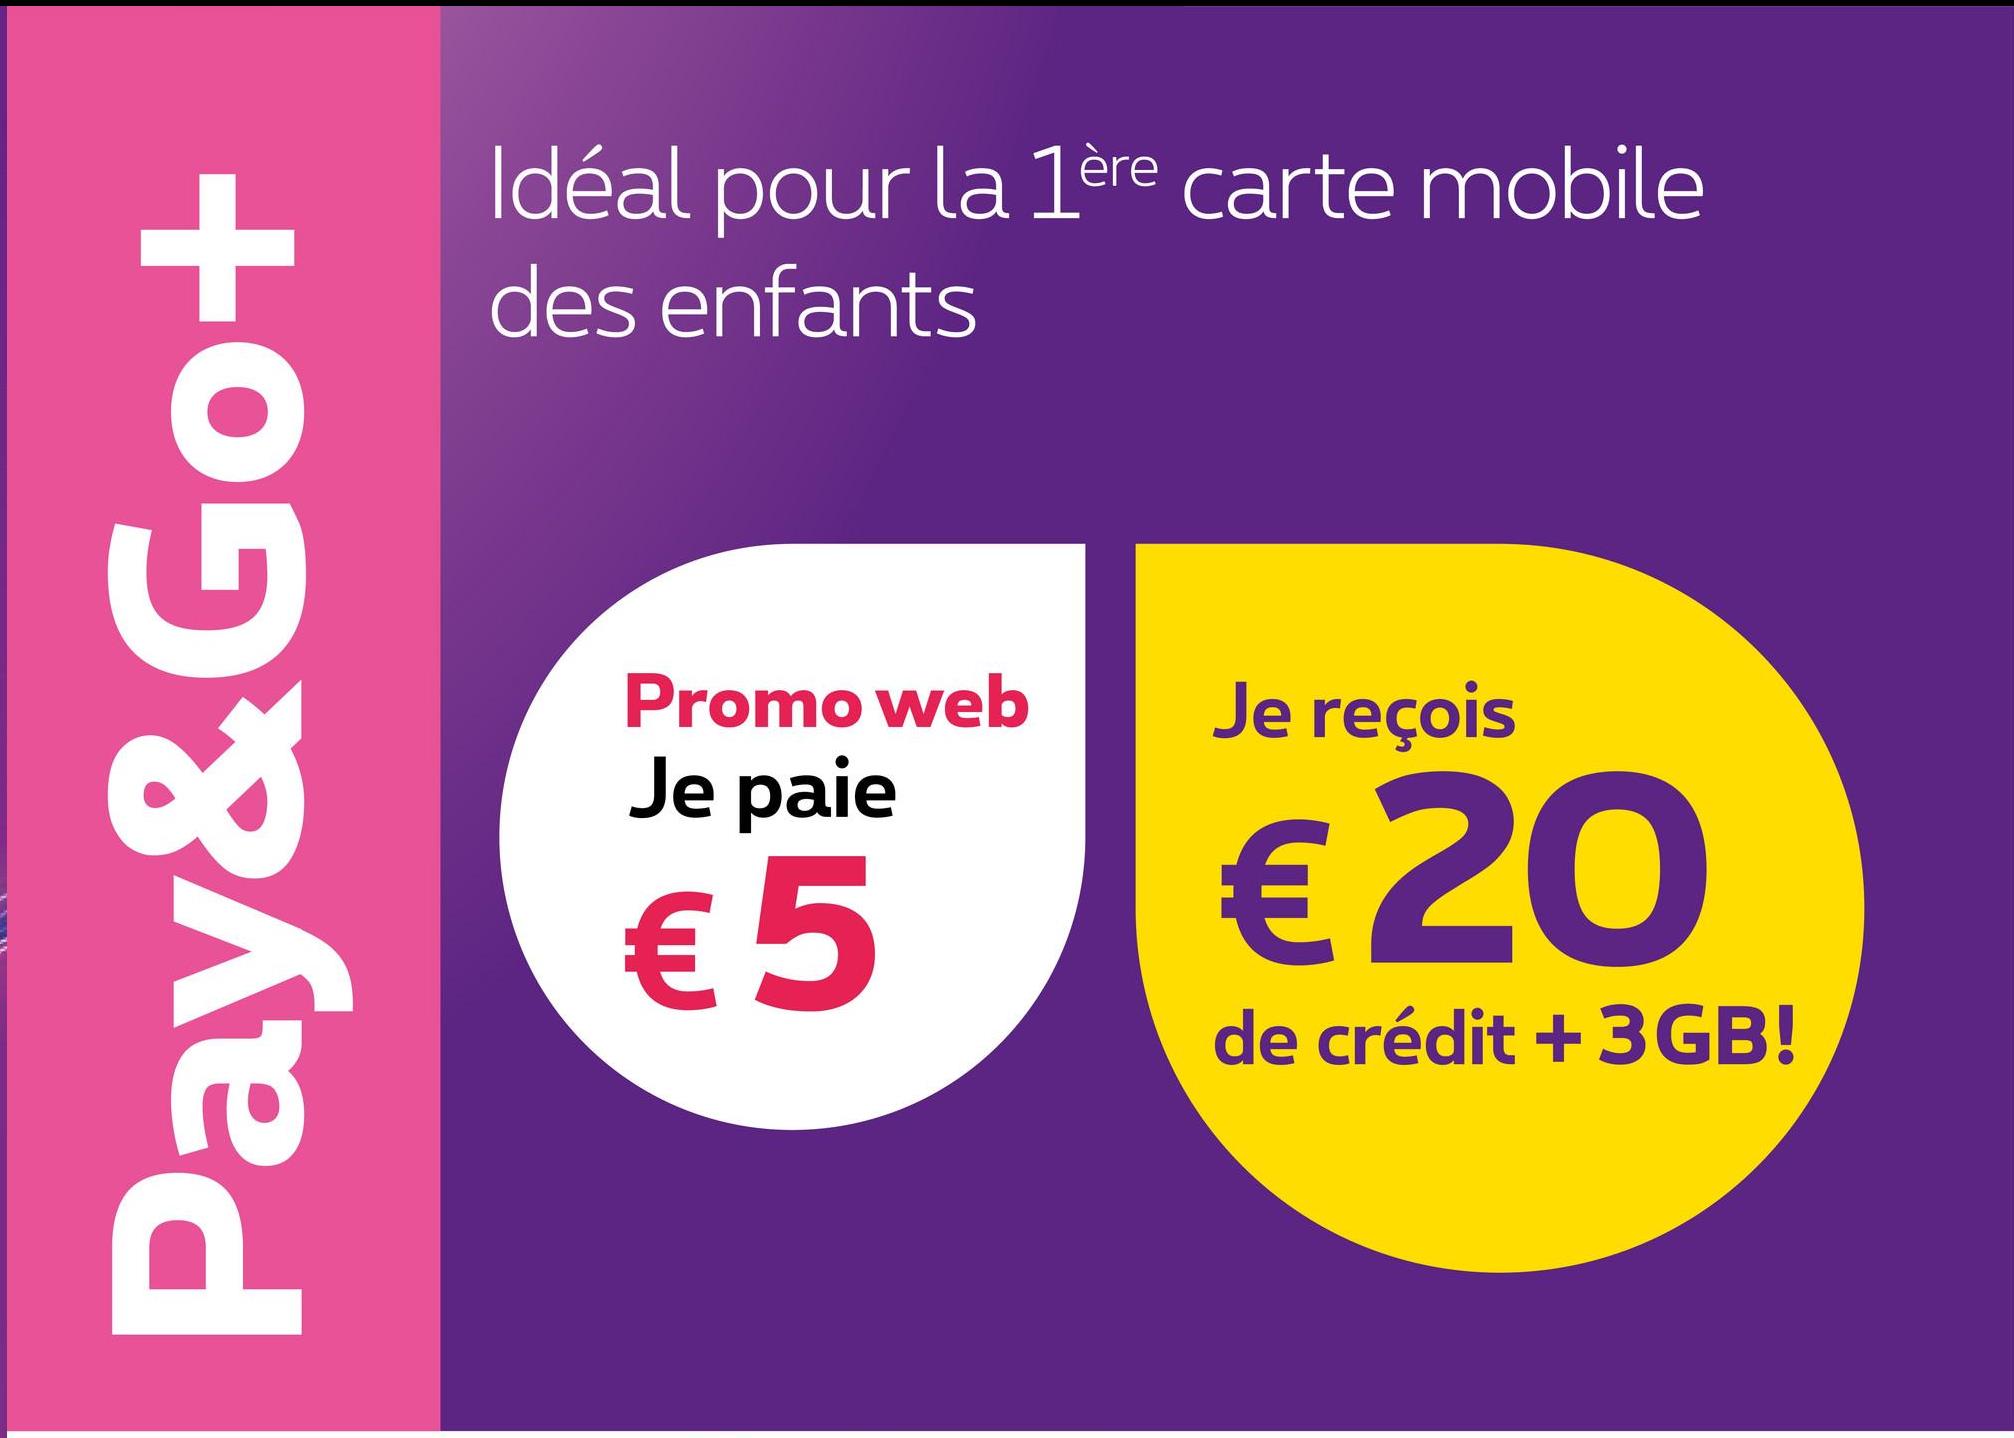 Pay&Go+
Idéal pour la 1ère carte mobile
des enfants
Promo web
Je paie
€5
Je reçois
€20
de crédit +3GB!